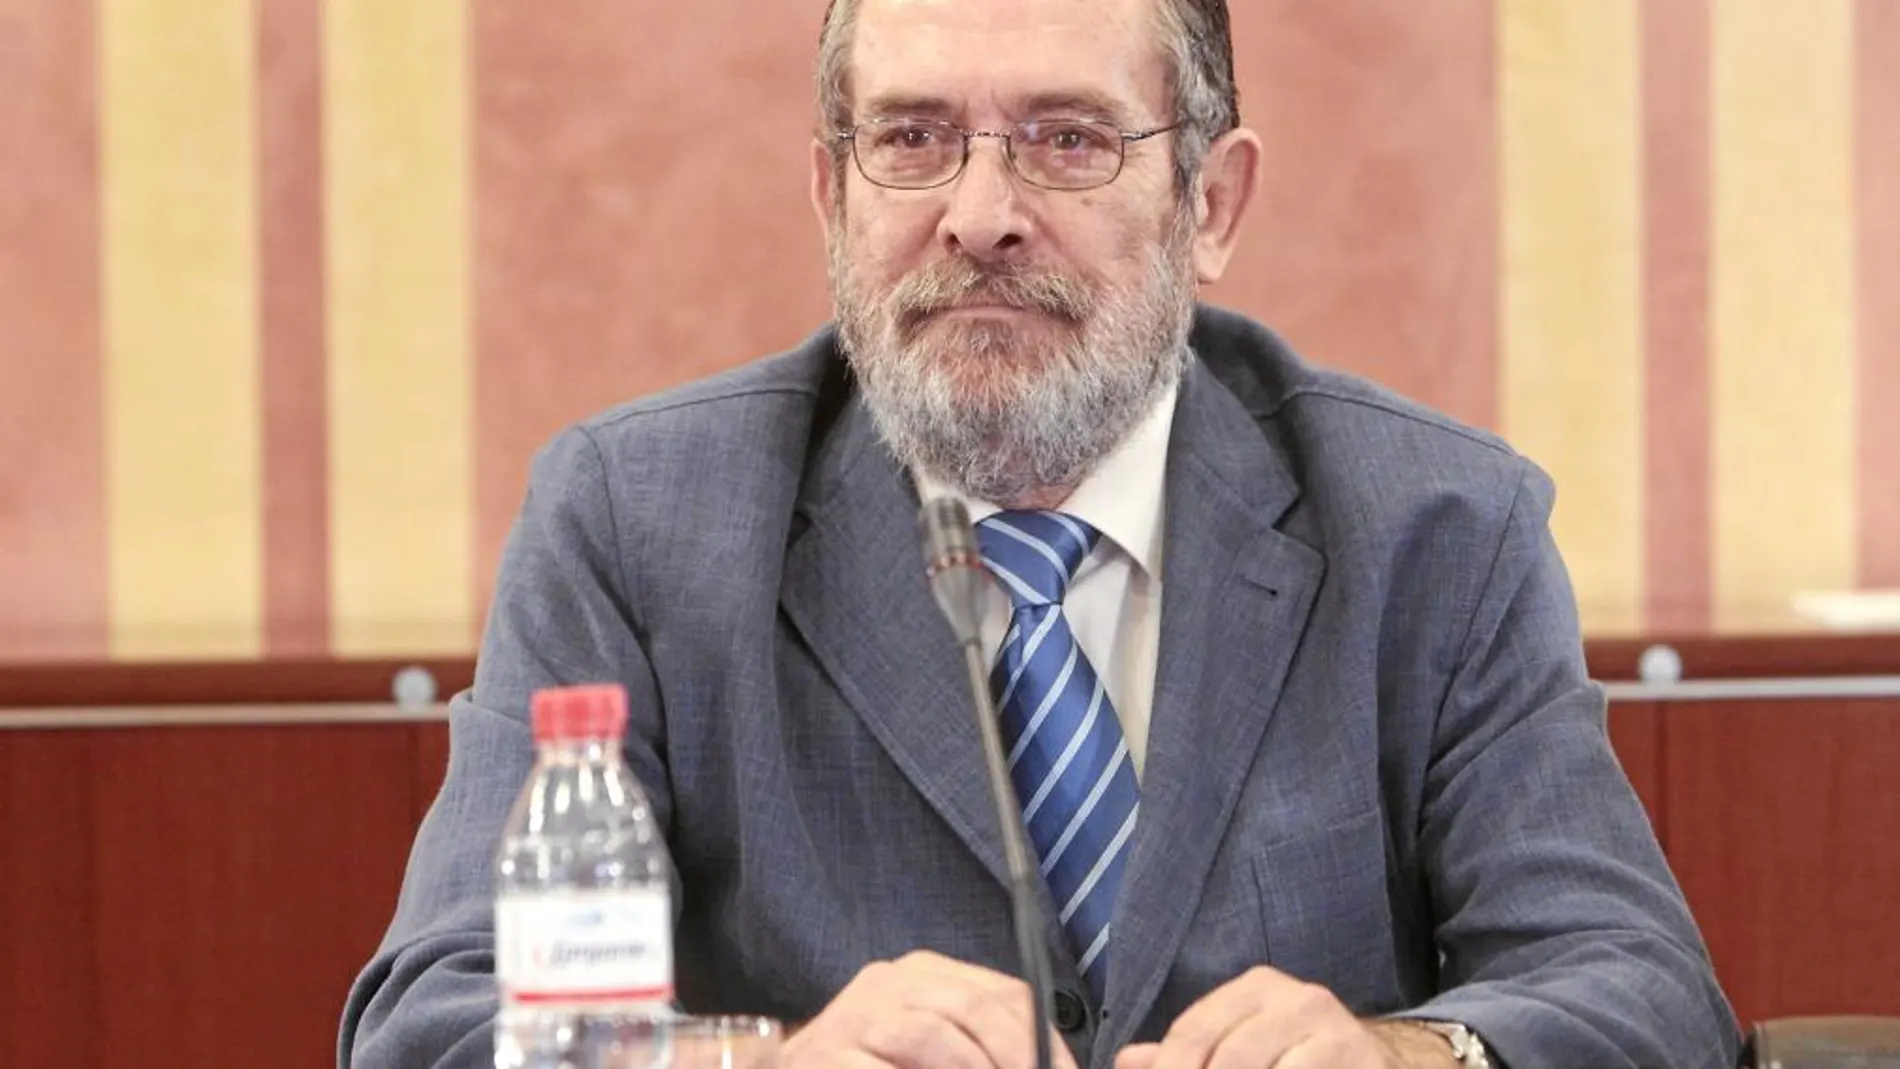 El ex delegado de Empleo en Sevilla Antonio Rivas Sánchez está imputado en la causa de los ERE desde el 20 de enero de 2011